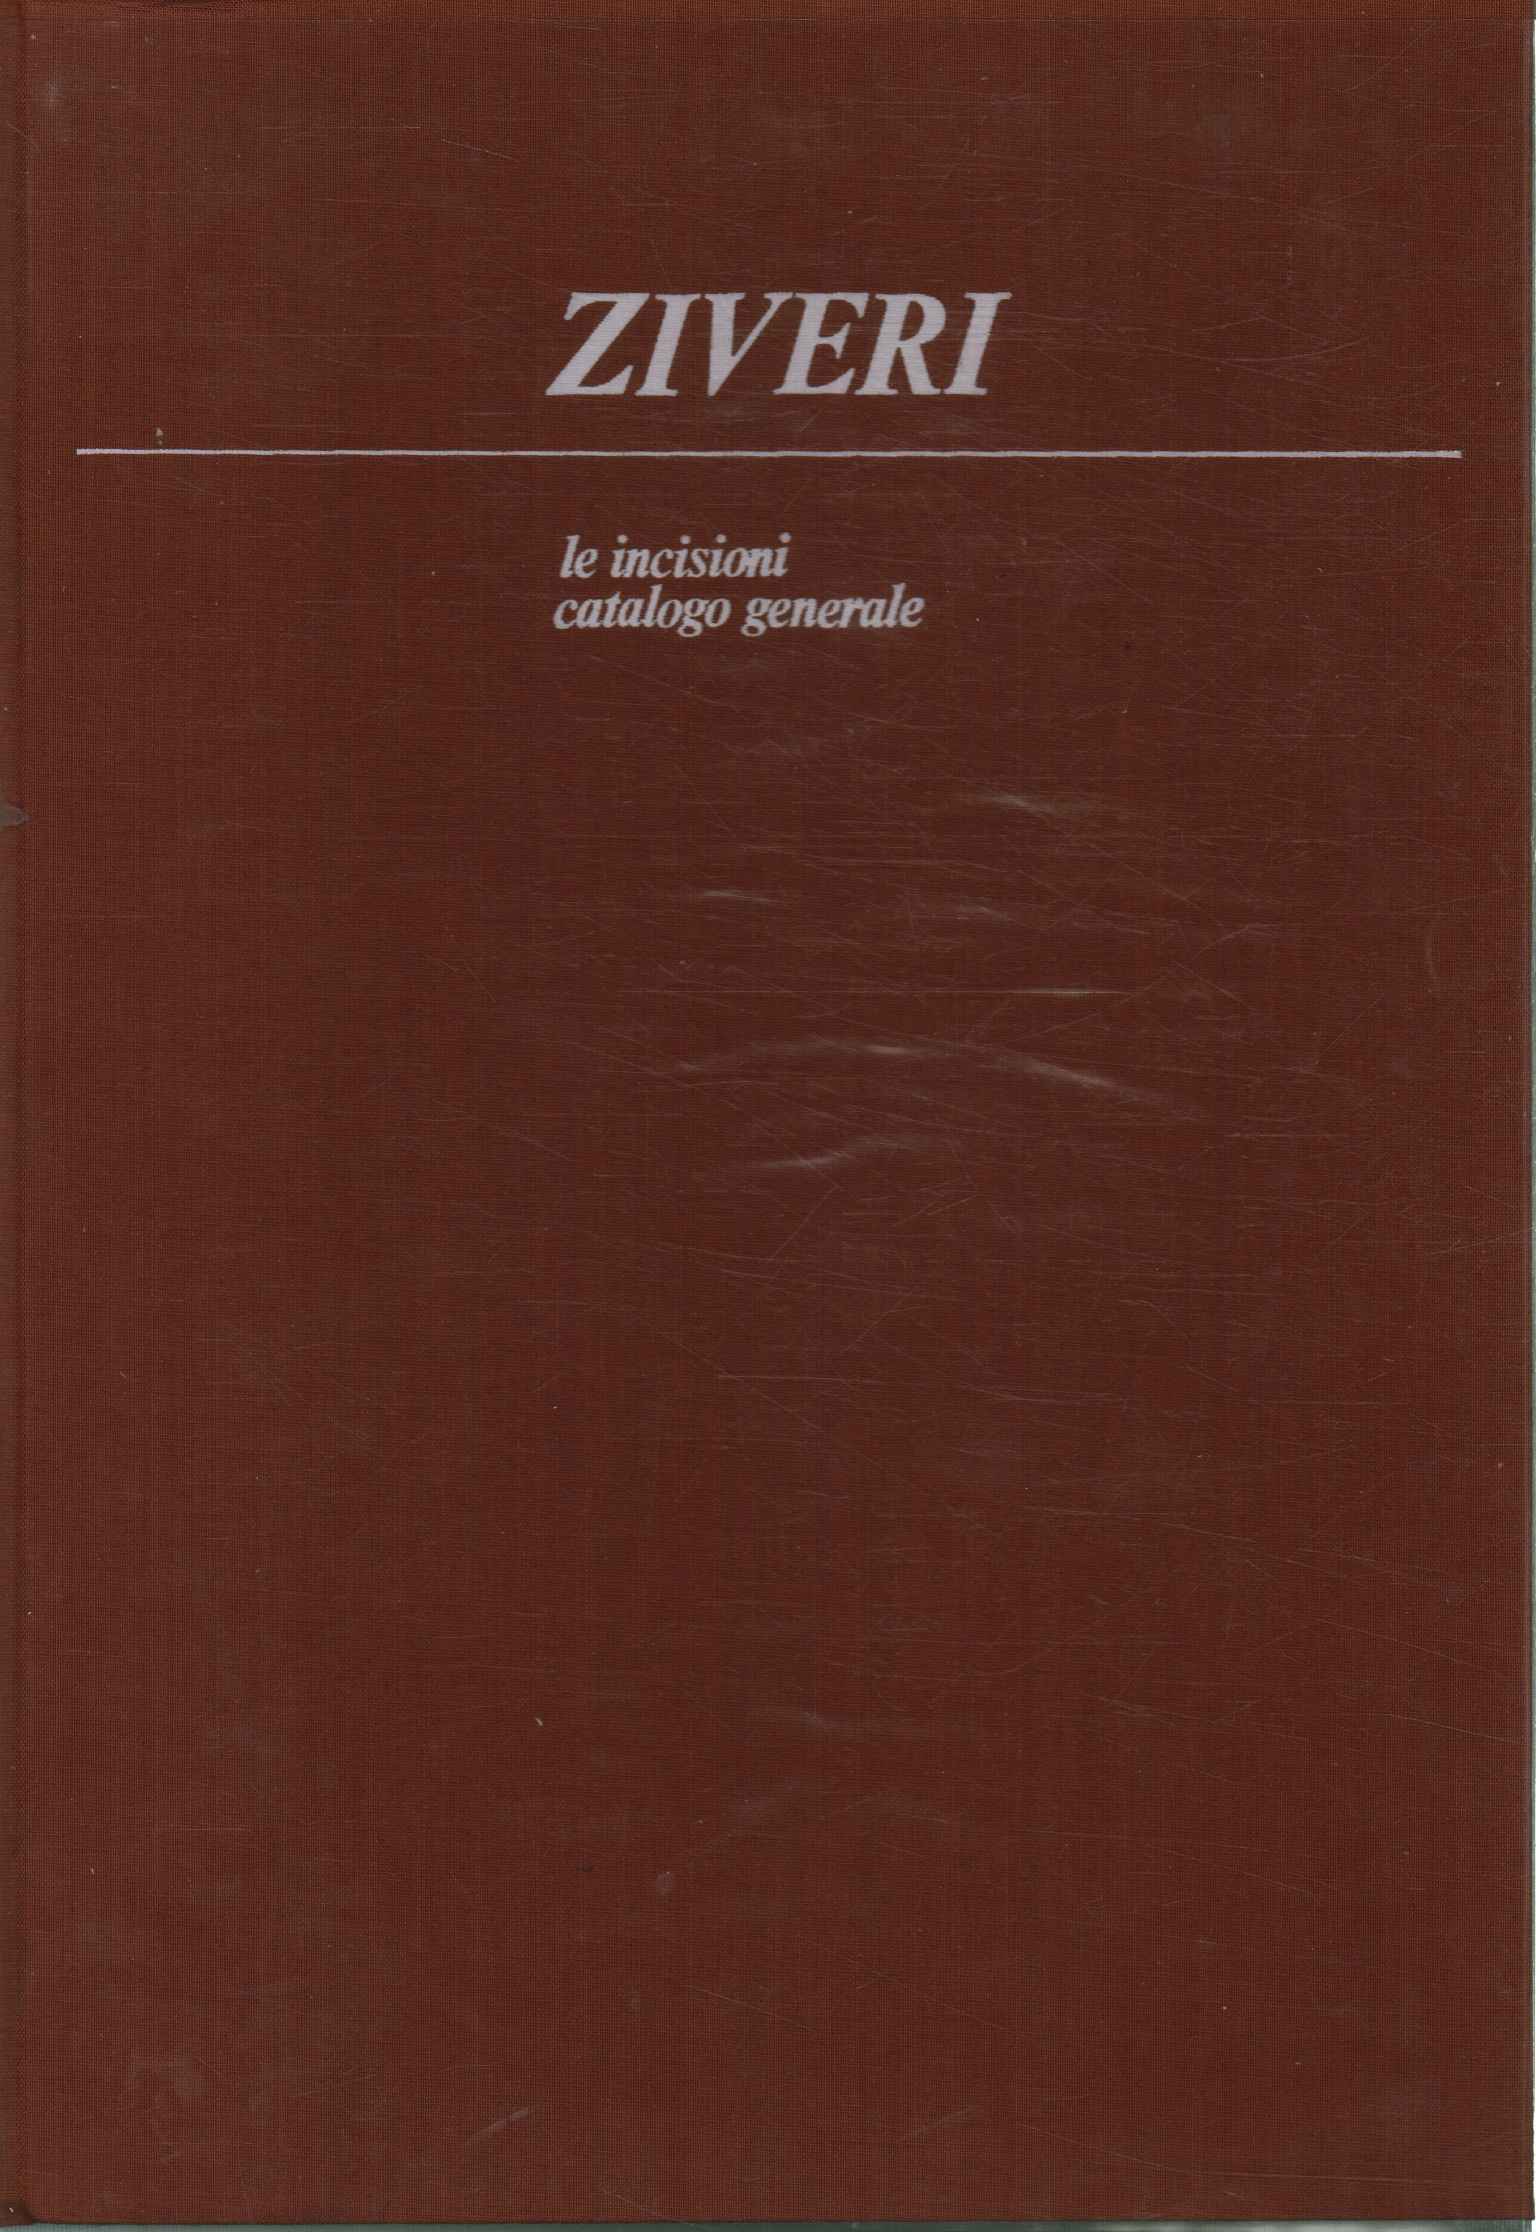 Ziveri. The engravings